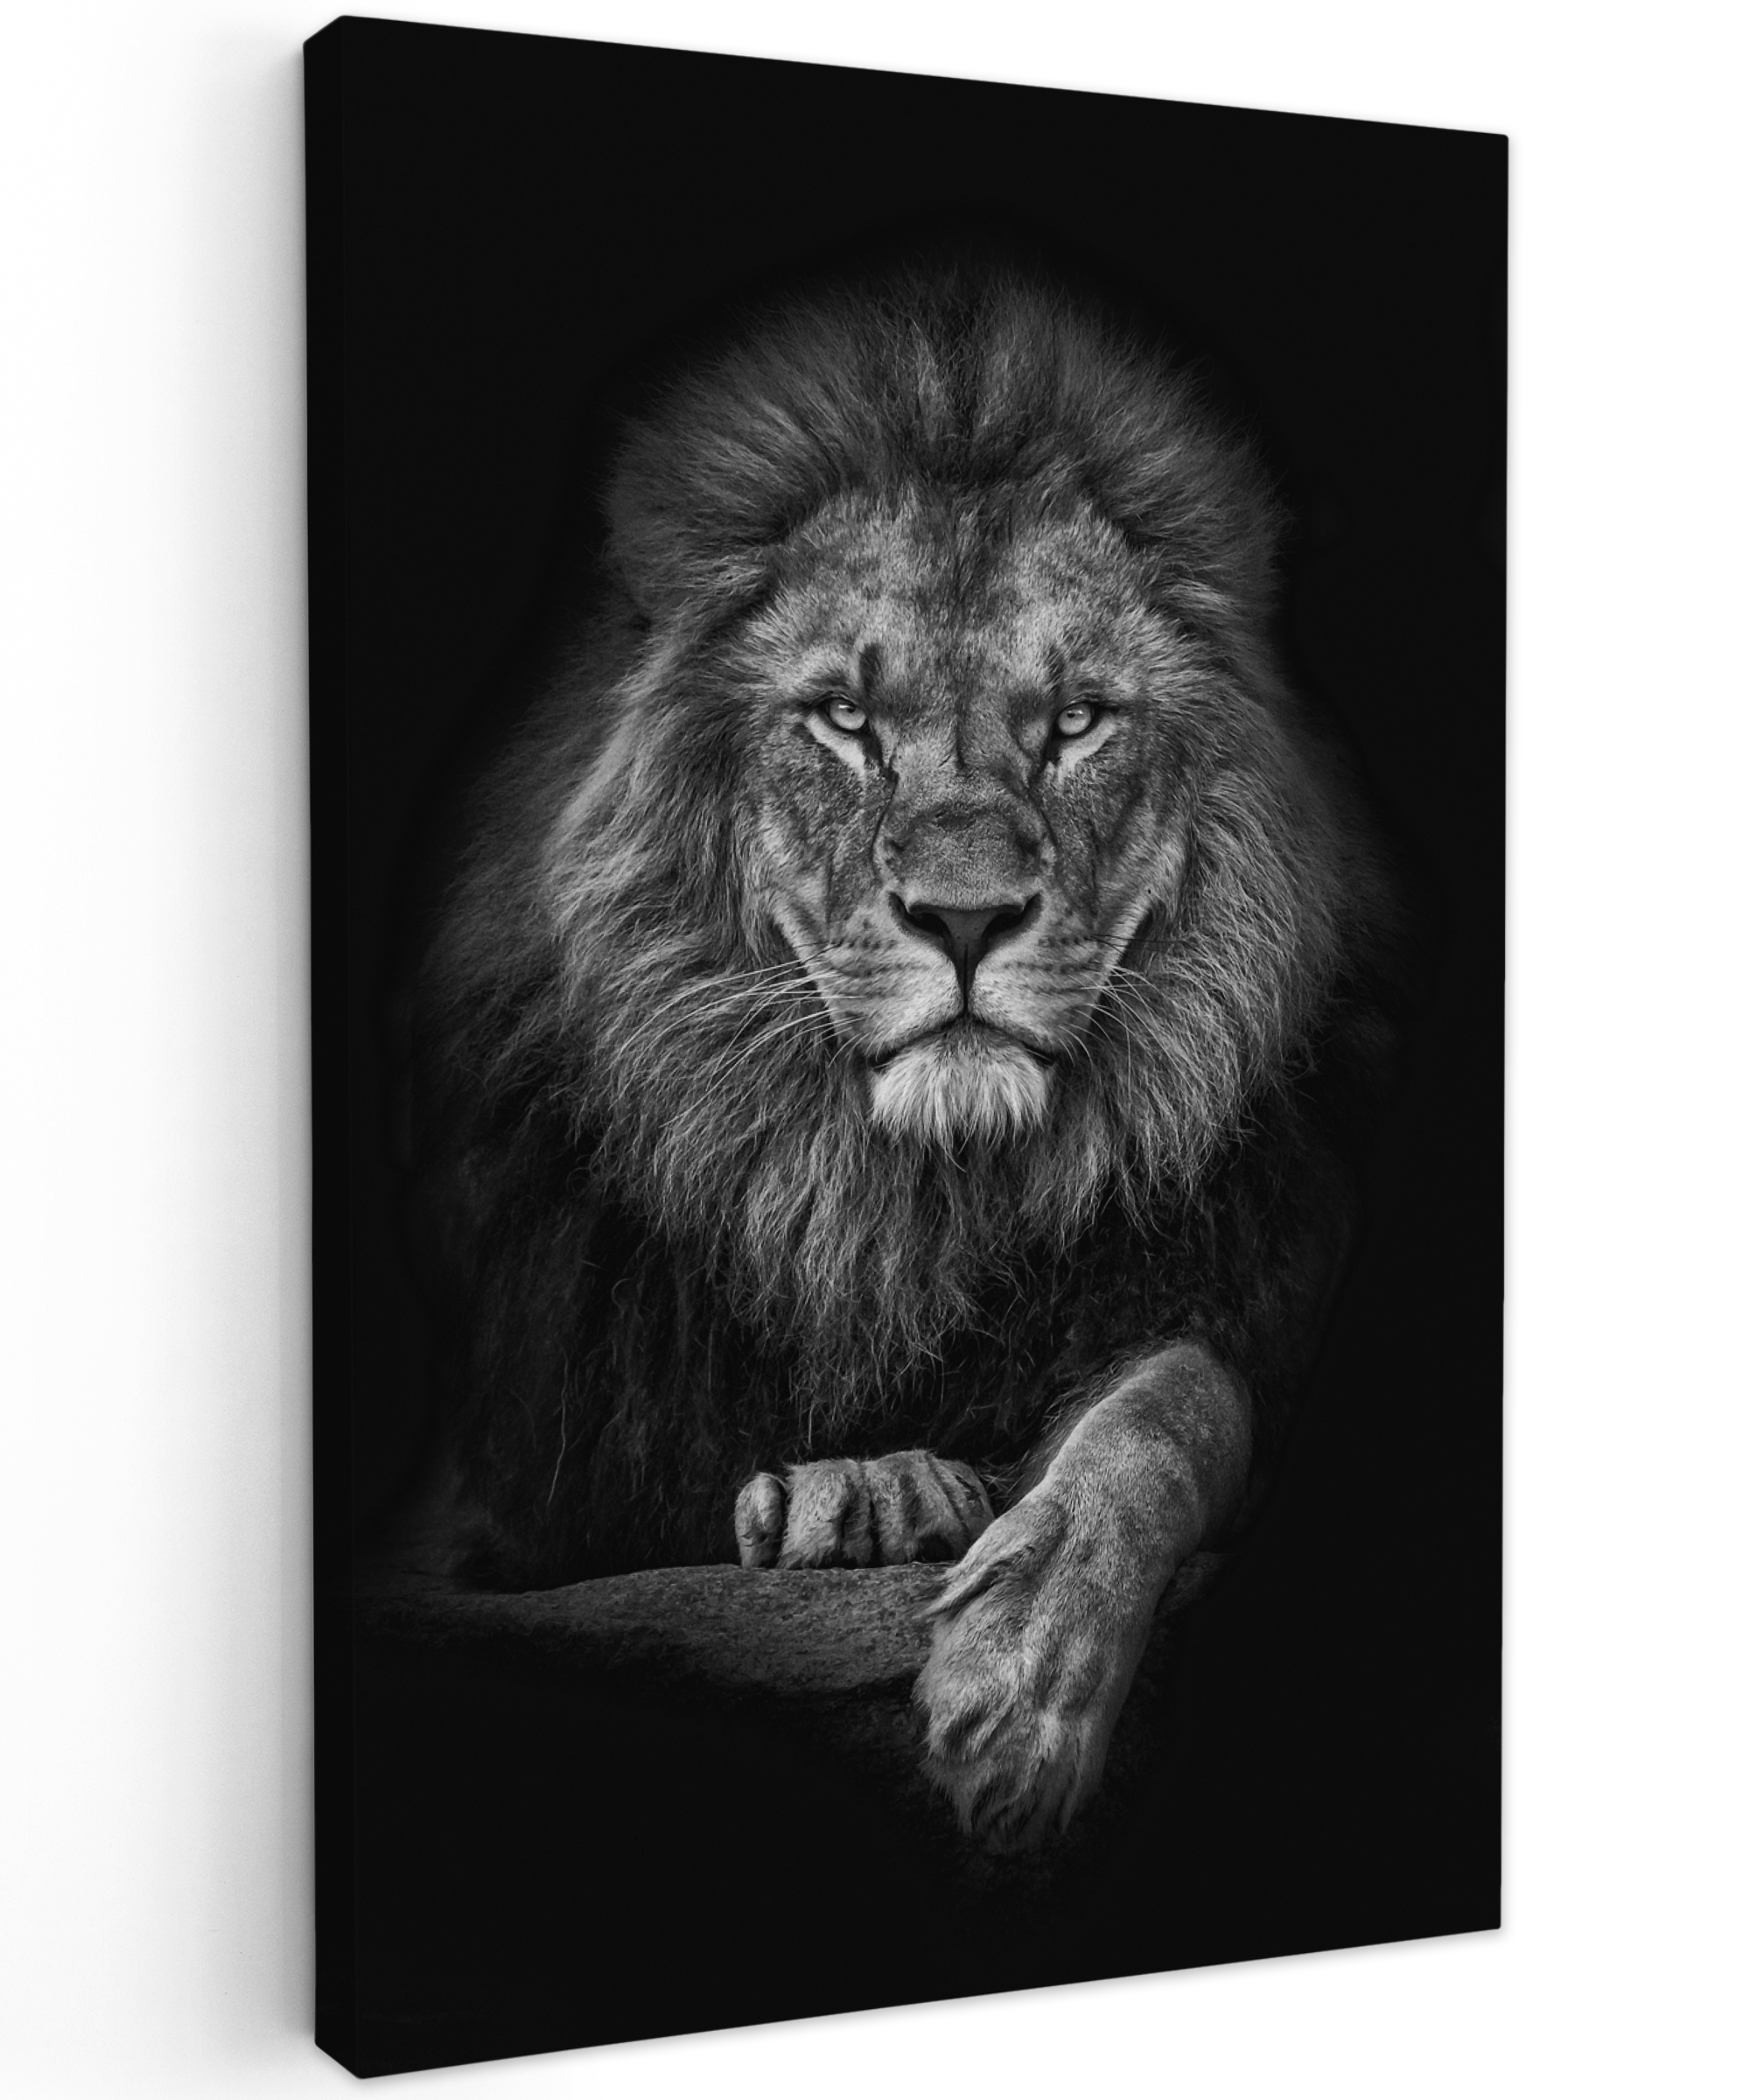 Leinwandbild - Löwe - Tiere - Schwarz - Weiß